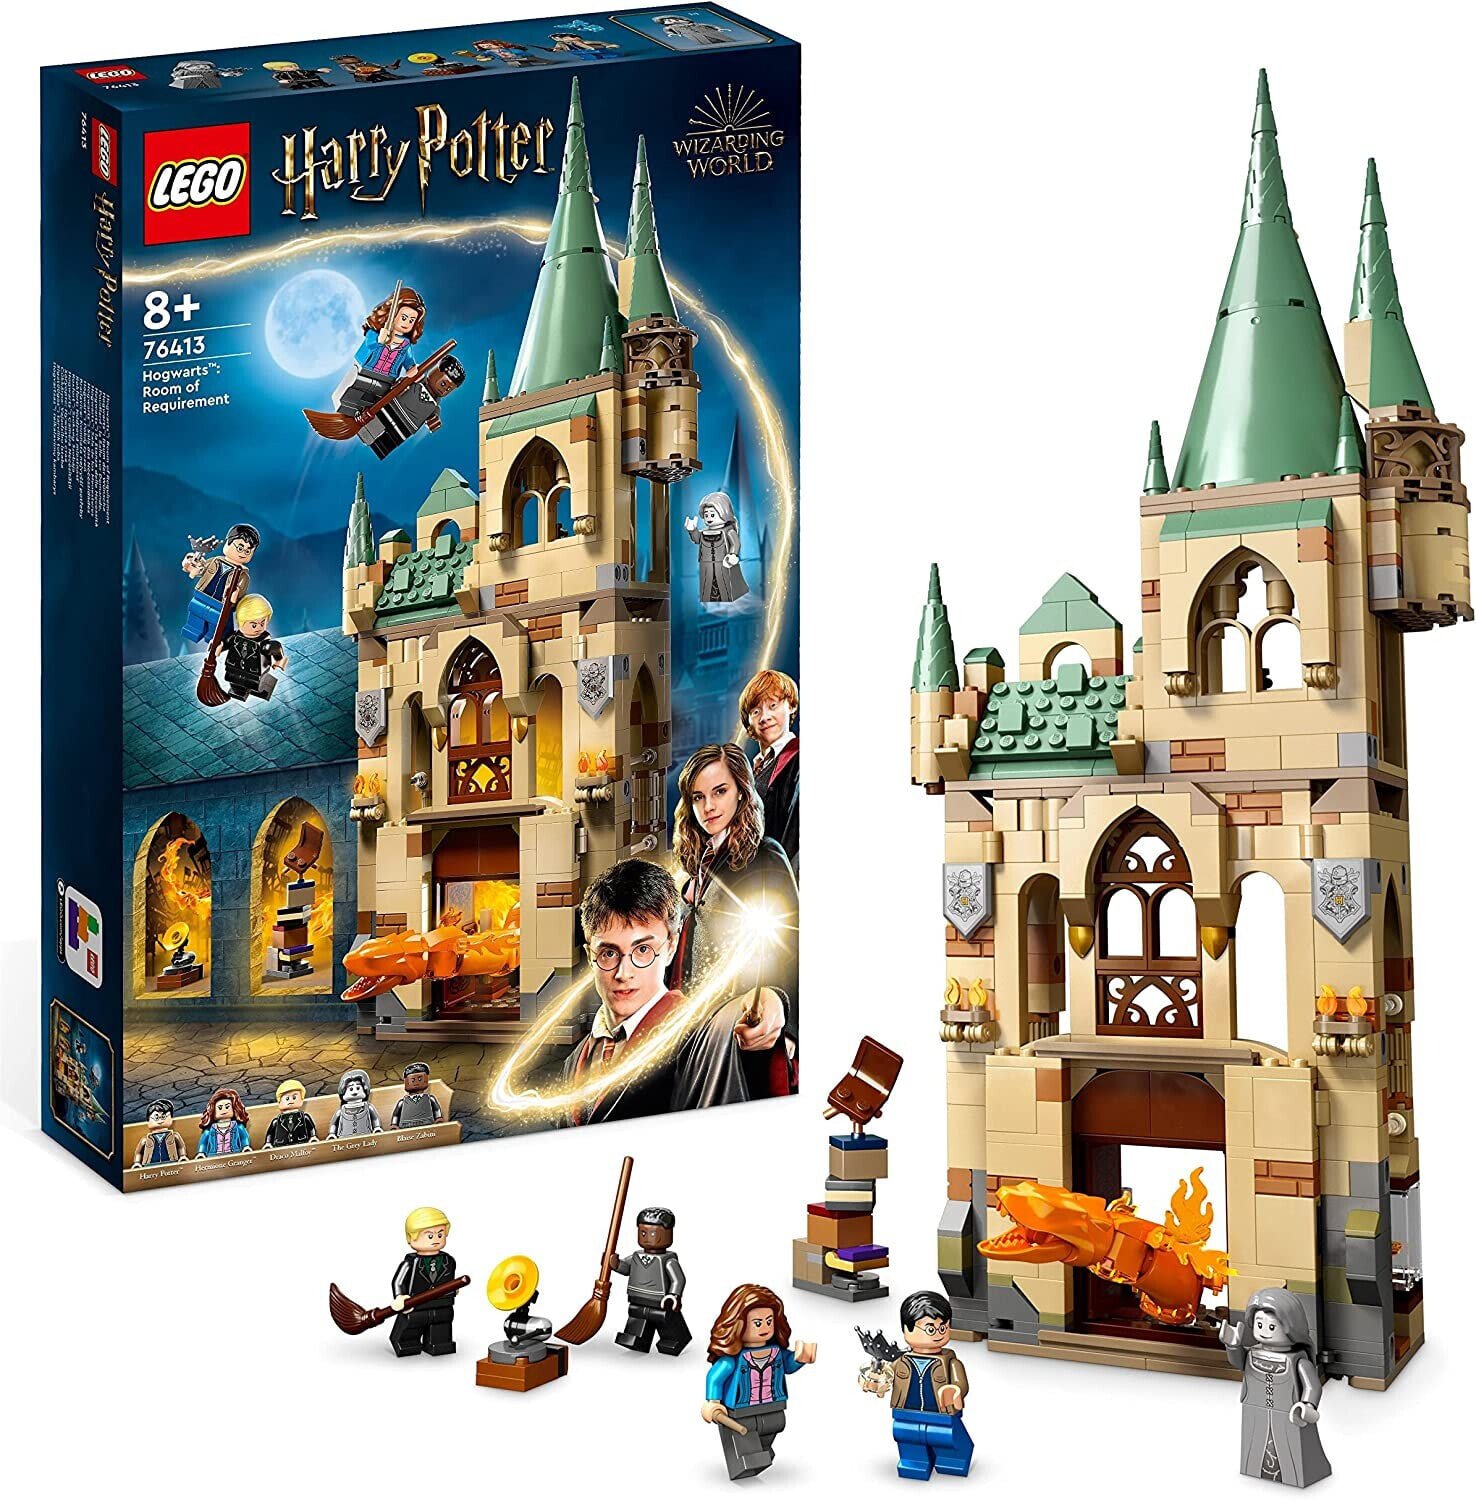 Lego Harry Potter 76413 Hogwarts: Der Raum auf Anfrage, Schlossspielzeug mit Feuerbrchen -Figurine